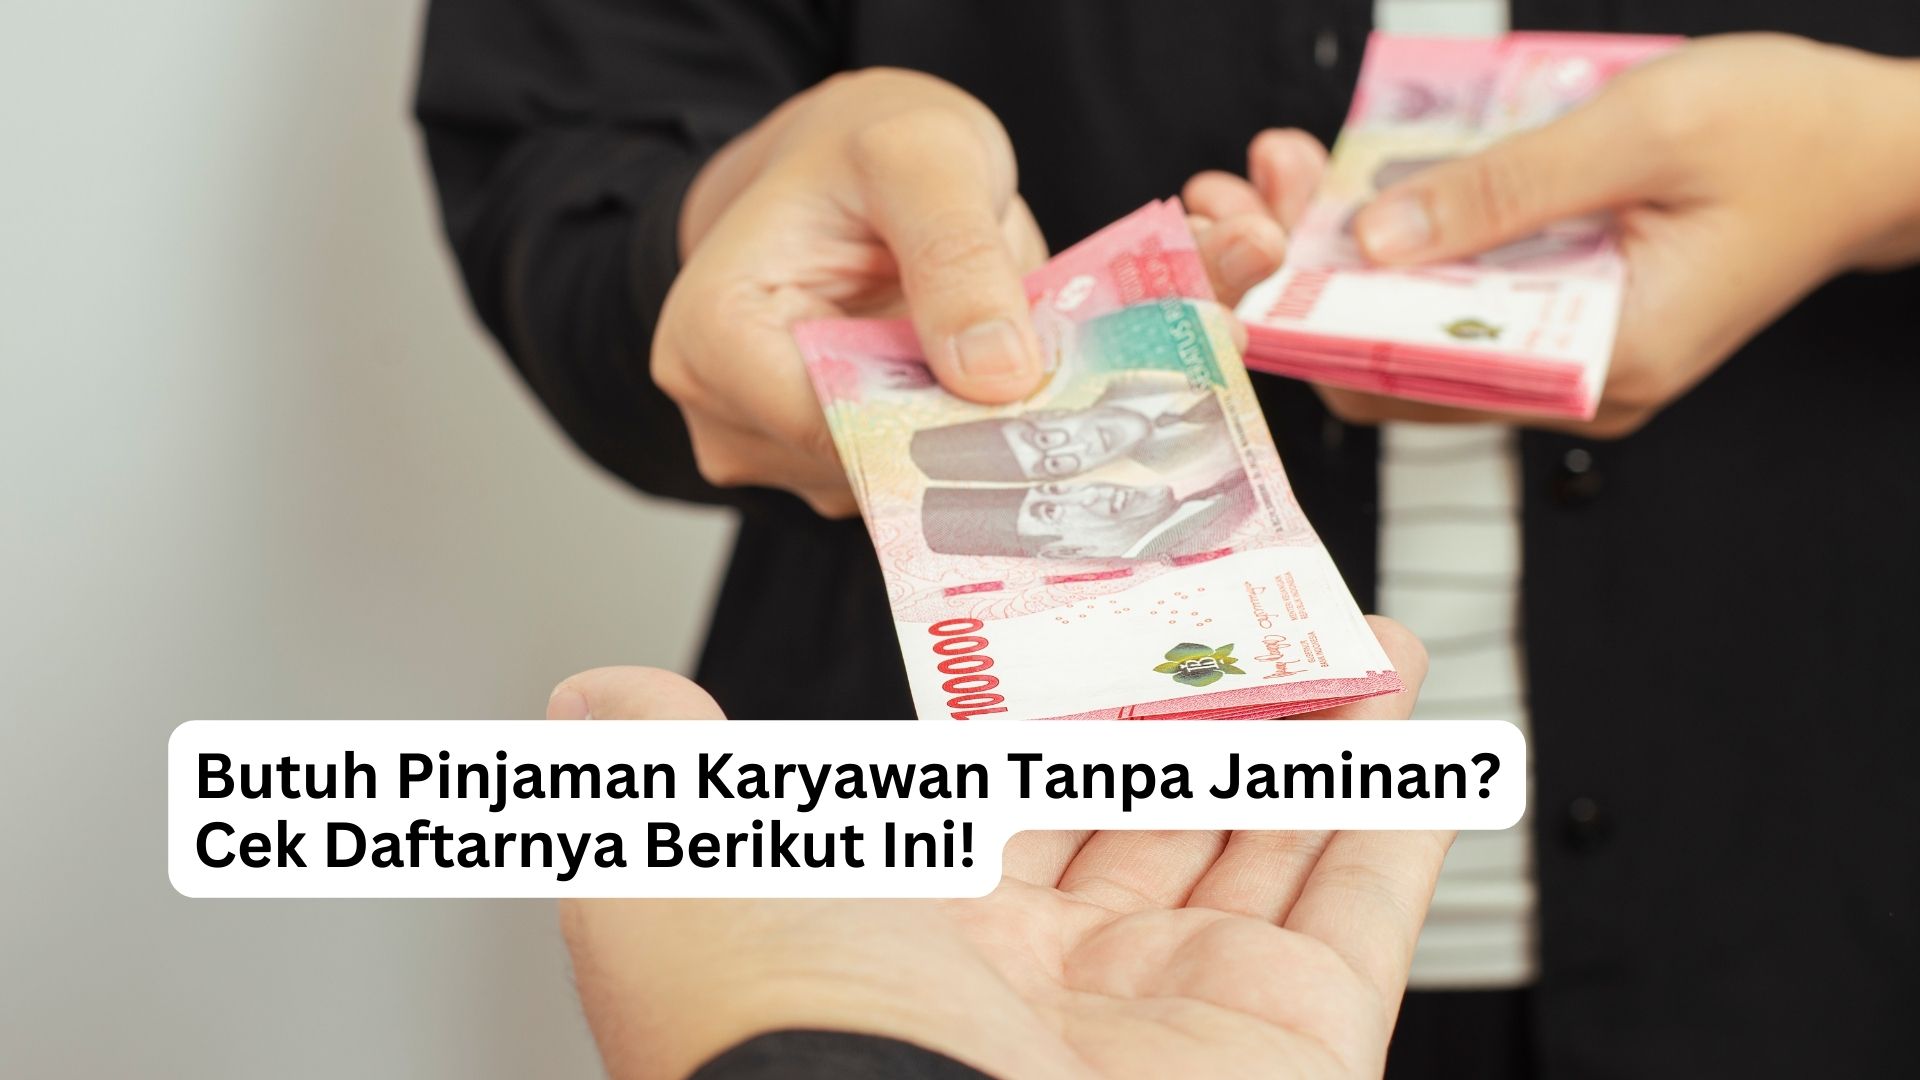 You are currently viewing Butuh Pinjaman Karyawan Tanpa Jaminan? Cek Daftarnya Berikut Ini!